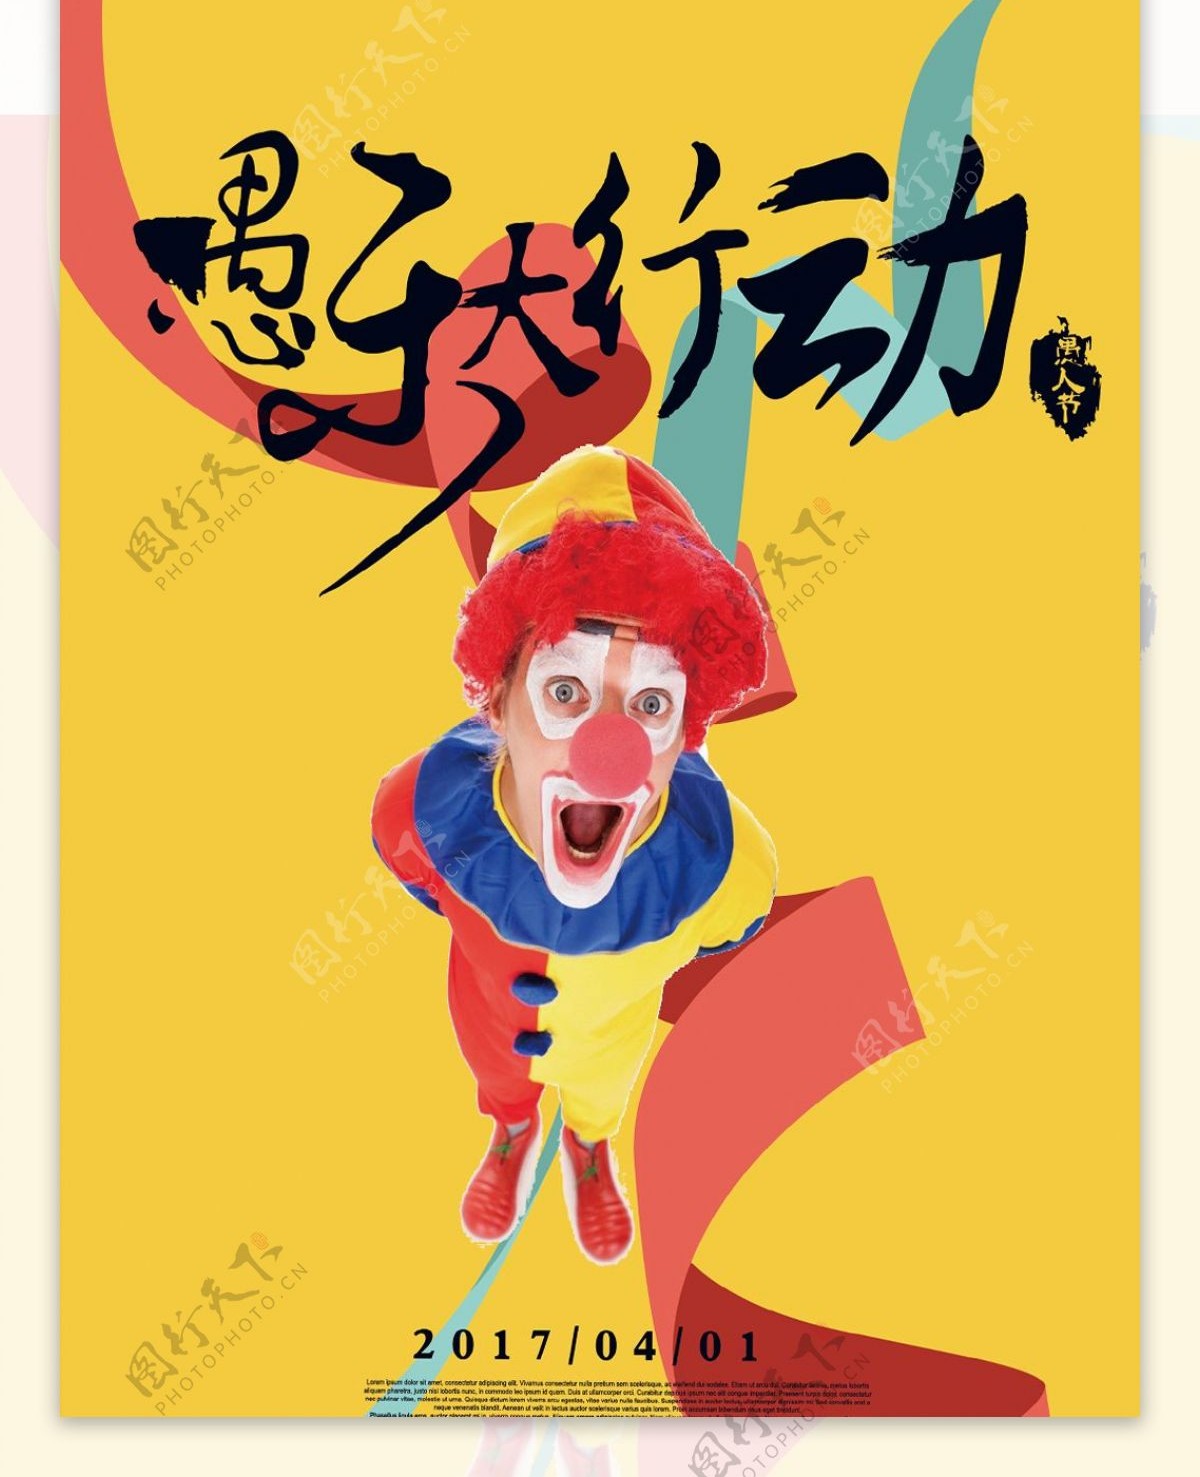 欢乐小丑愚人节海报设计